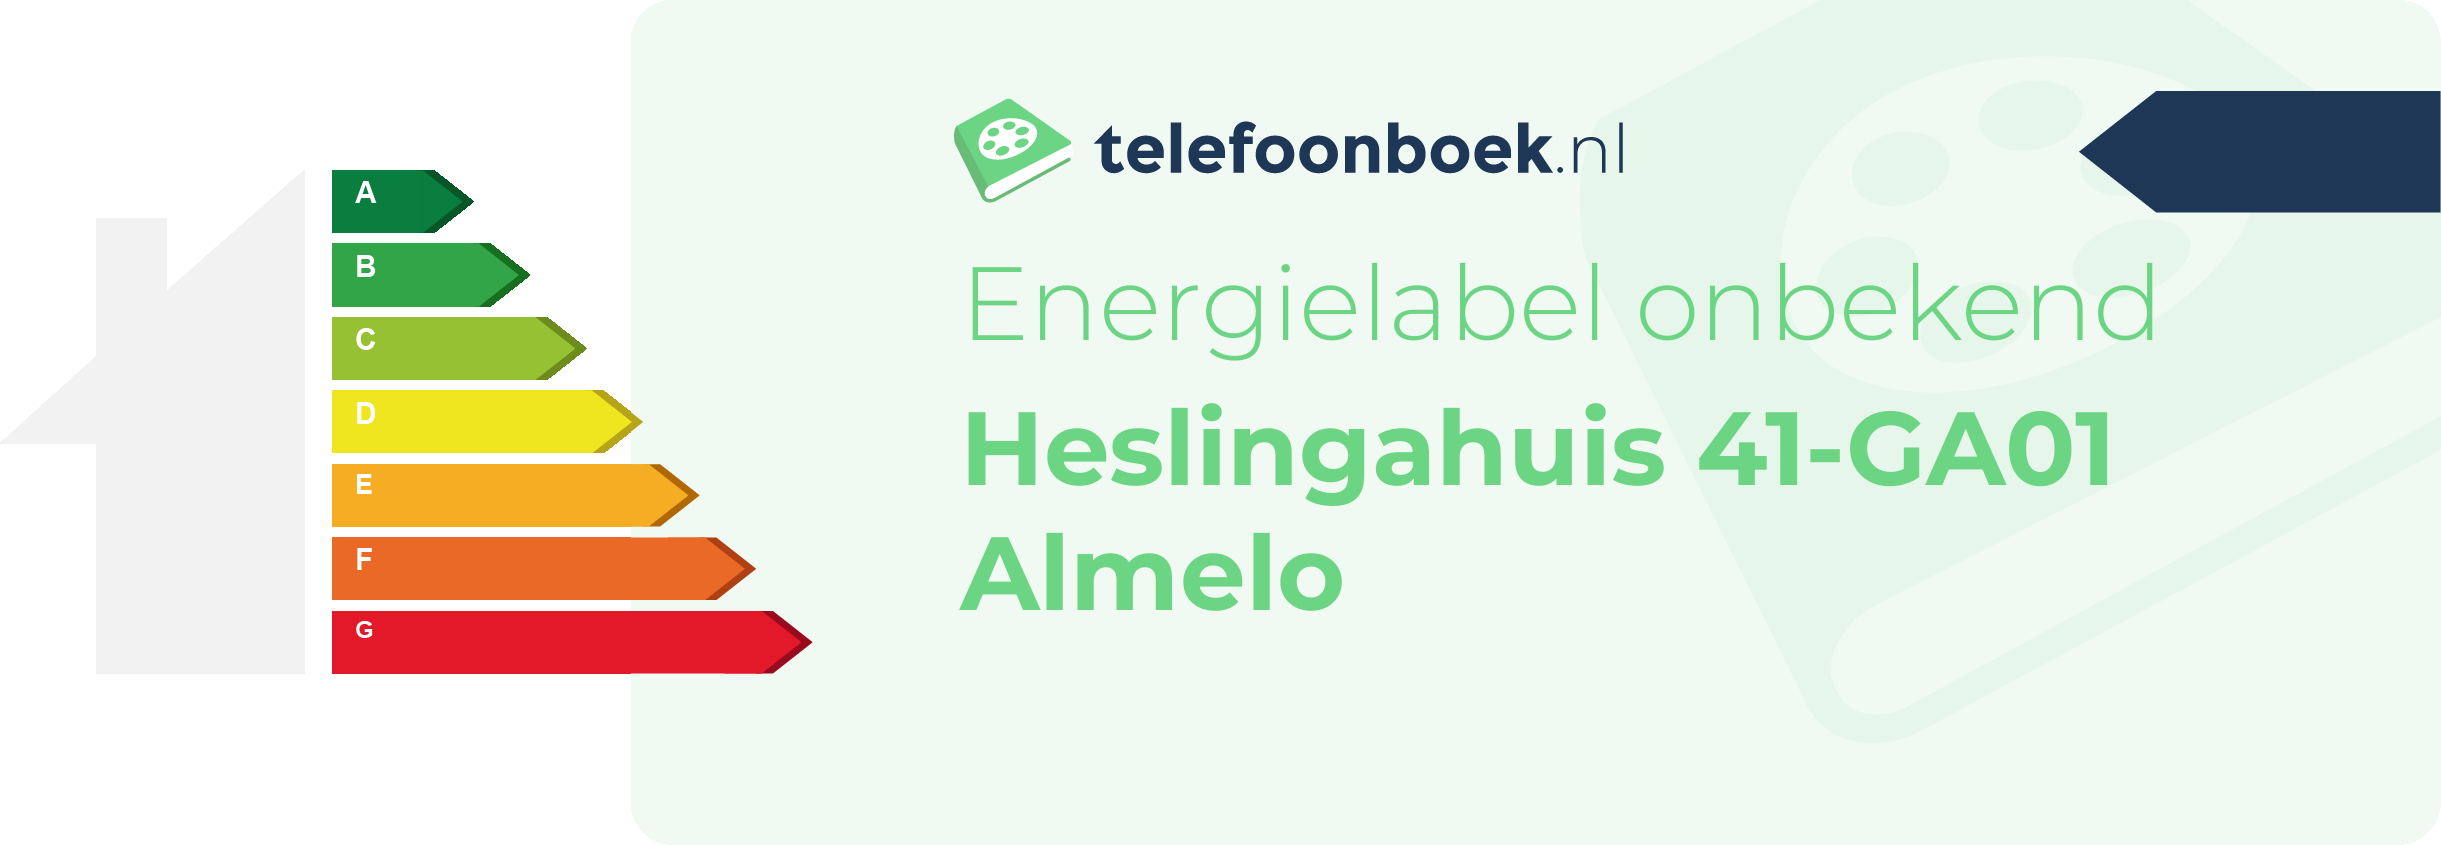 Energielabel Heslingahuis 41-GA01 Almelo